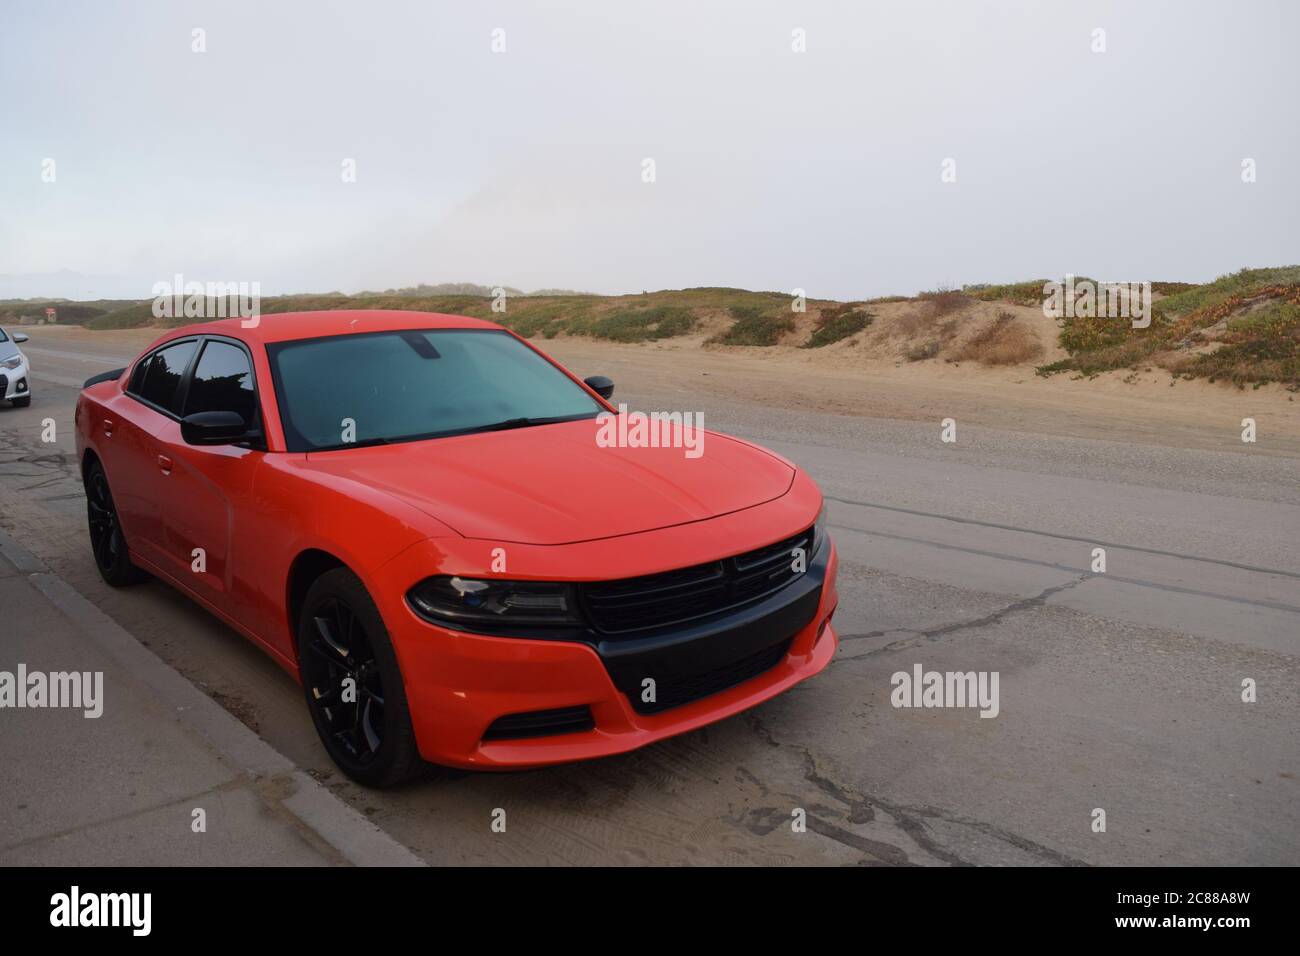 FRESNO, STATI UNITI - 16 luglio 2020: Foto di una Dodge Chevy arancione brillante auto sportiva con finestre colorate parcheggiata a Morro Bay Dunes in CA. Foto Stock